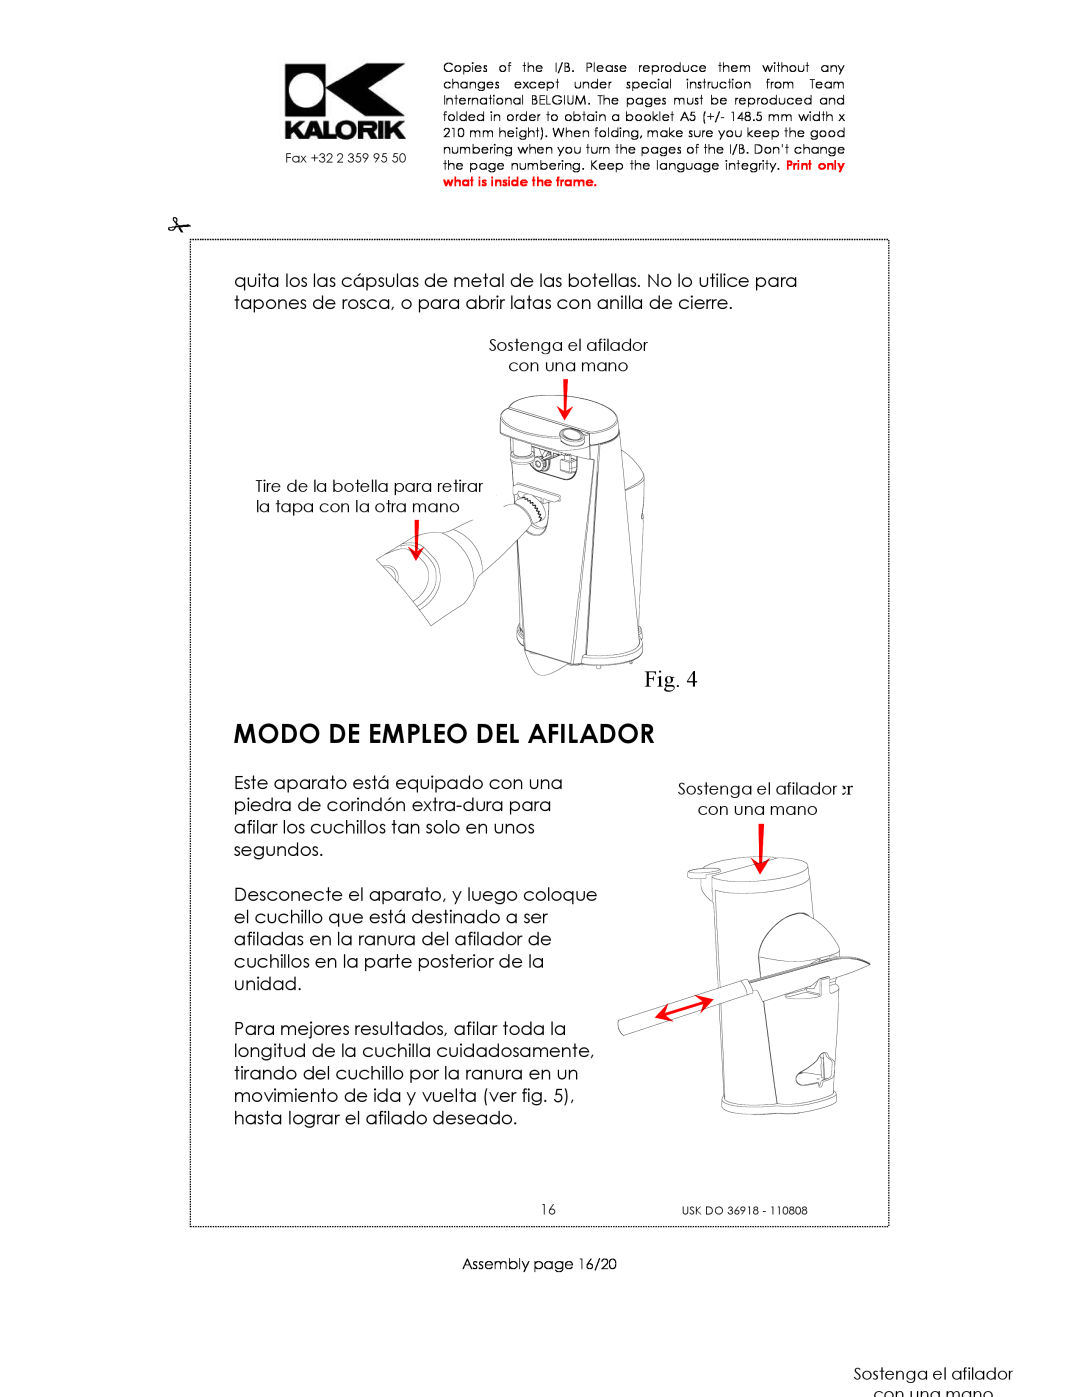 Kalorik USK DO 36918 manual Modo De Empleo Del Afilador, Sostenga el afilador con una mano 